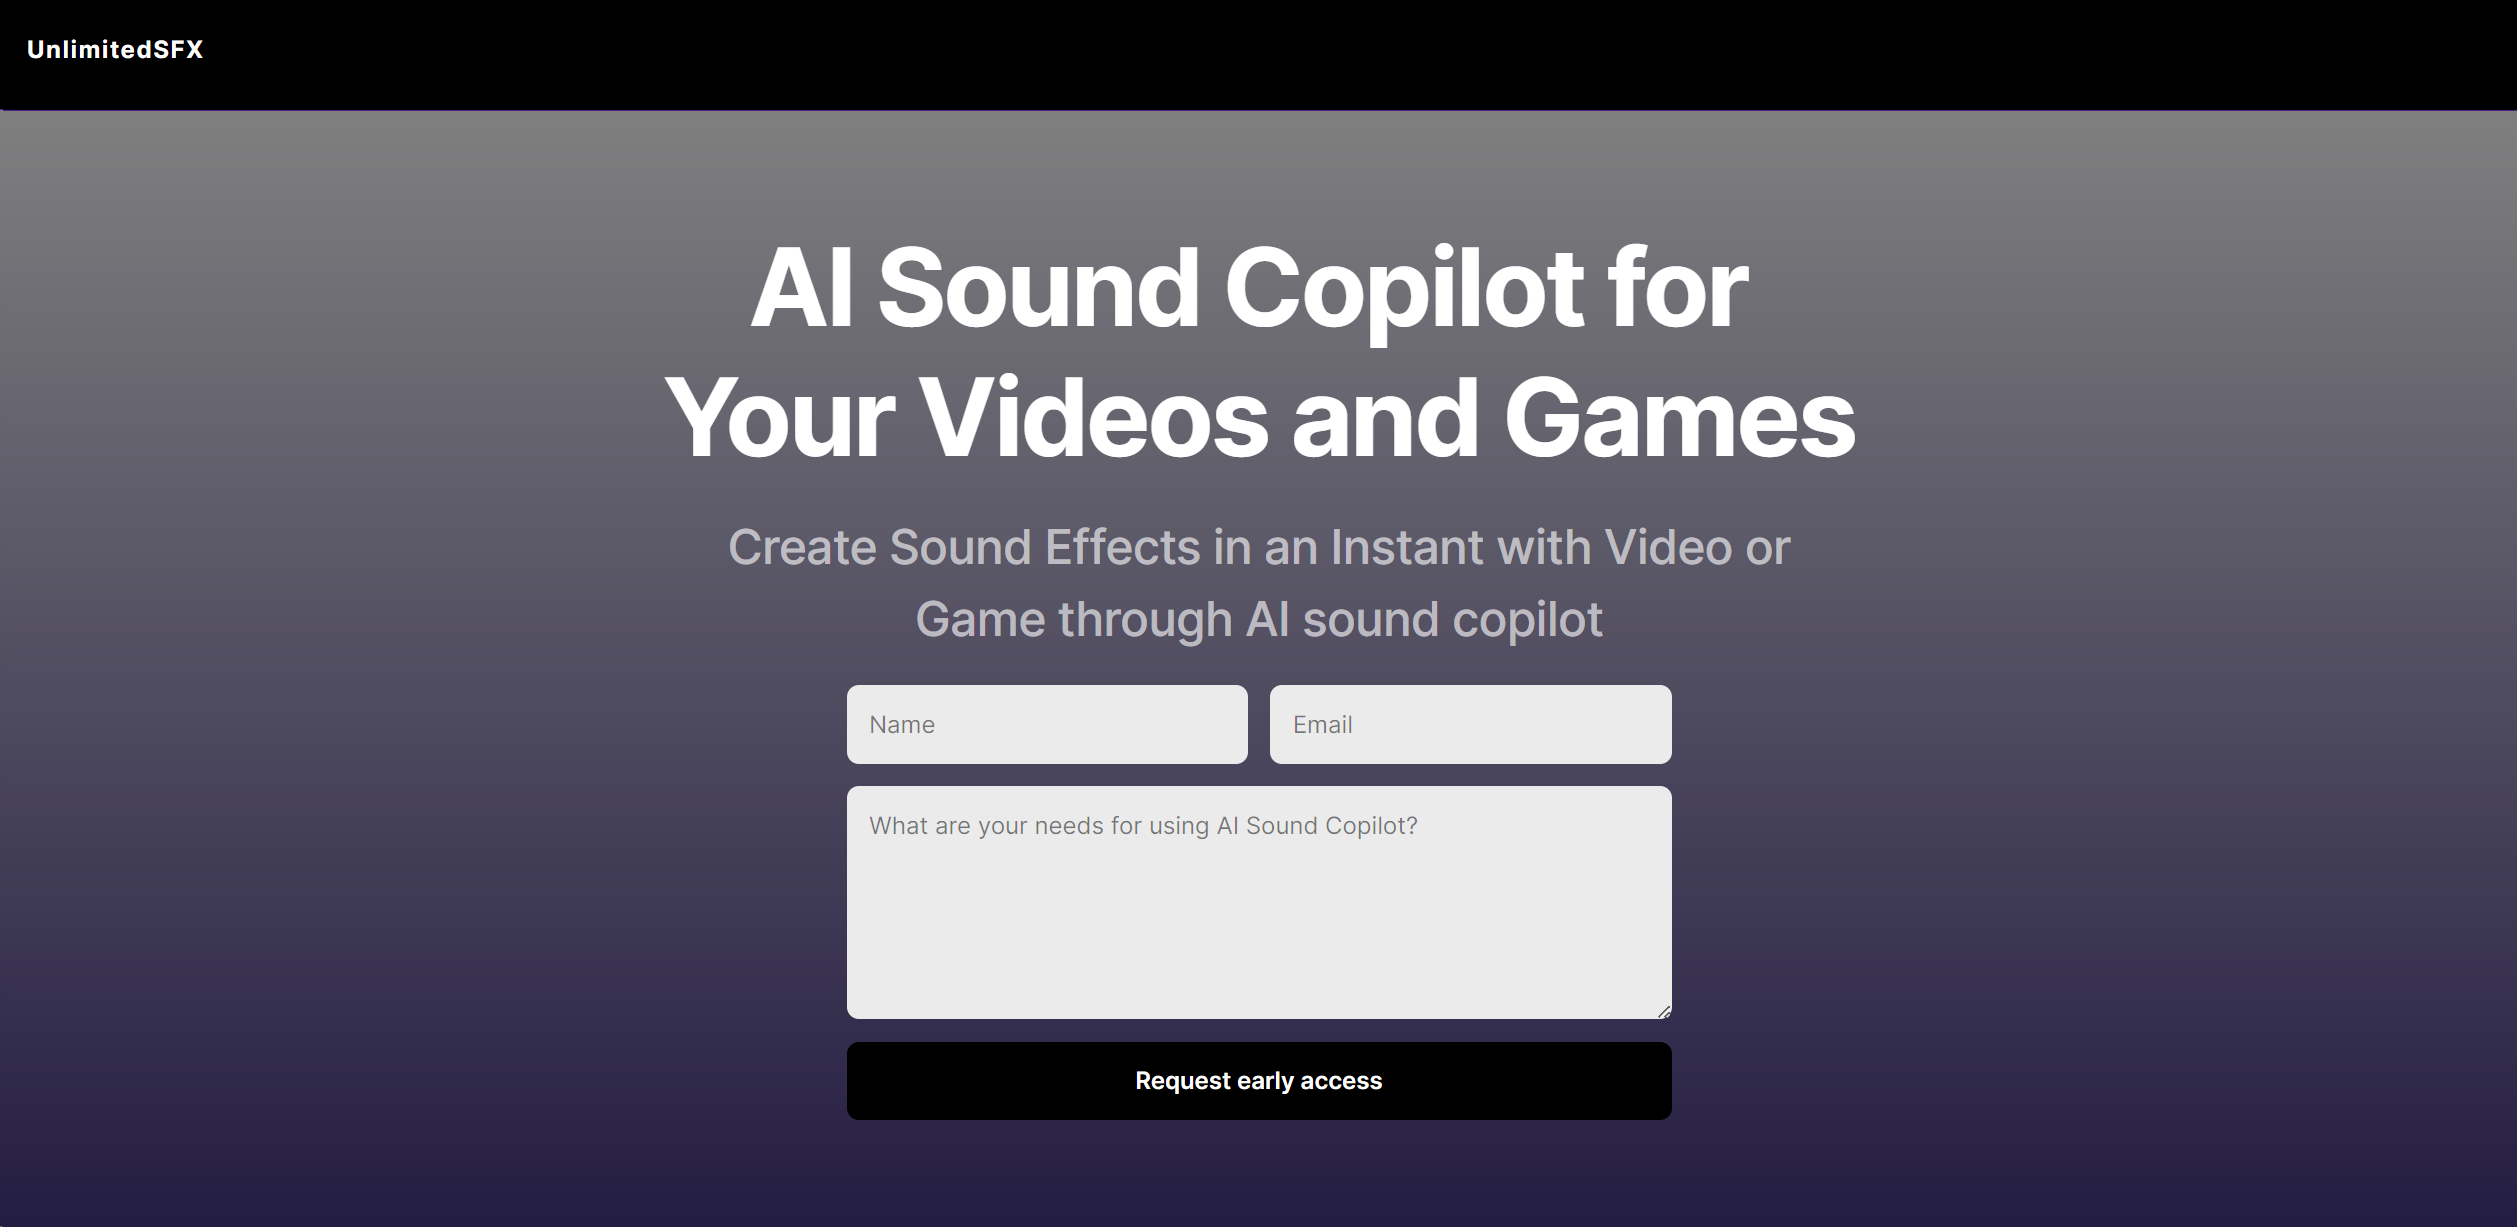 Copiloto de sonido AI